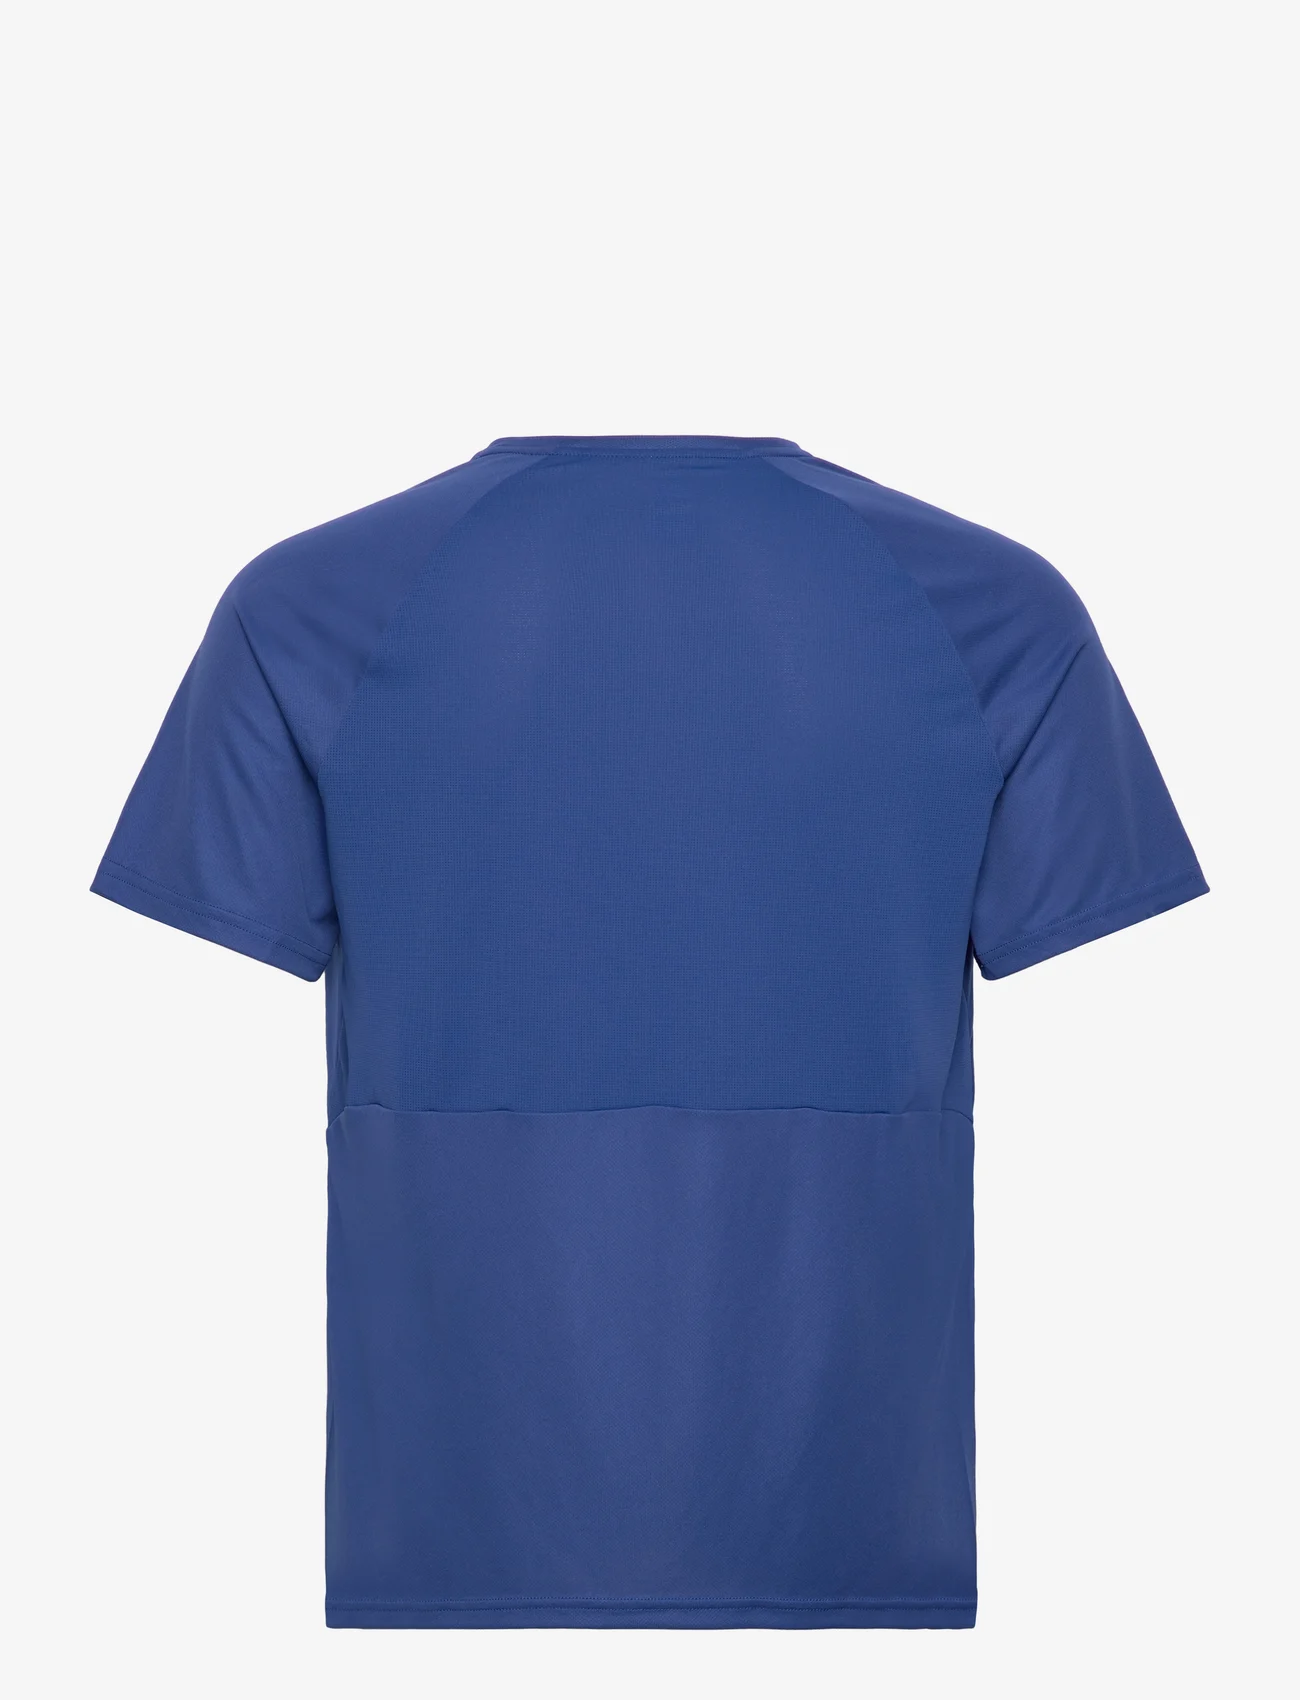 Odlo - ODLO T-shirt crew neck s/s ESSENTIAL CHILL-TEC - kortermede t-skjorter - limoges - 1